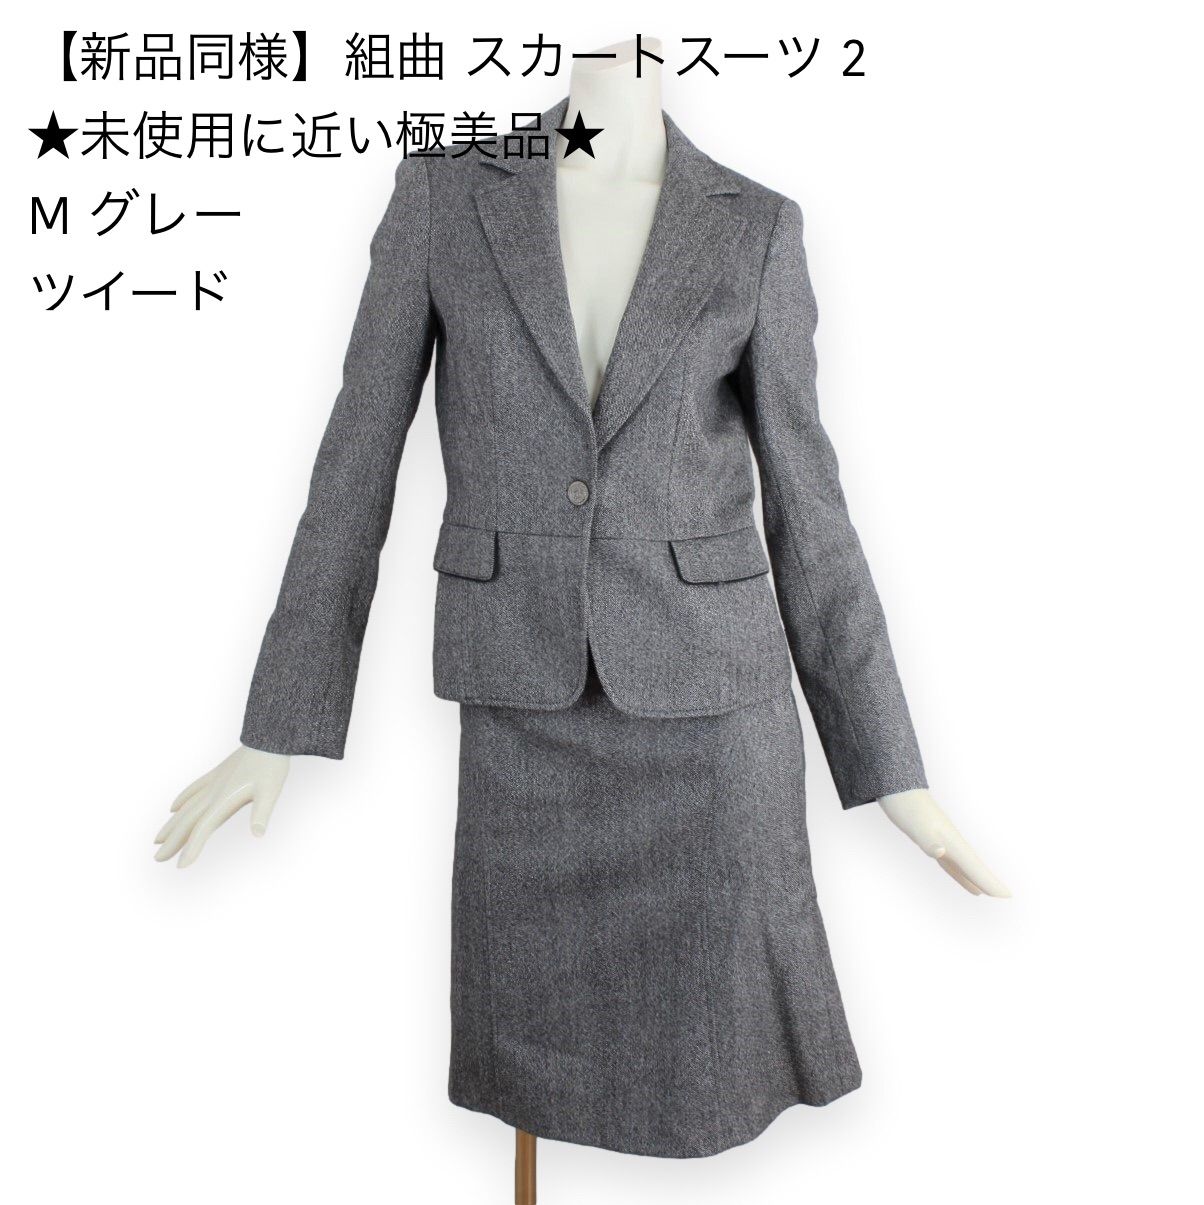 30【新品同様】組曲 クミキョク スカートスーツ 2 ☆未使用に近い極美